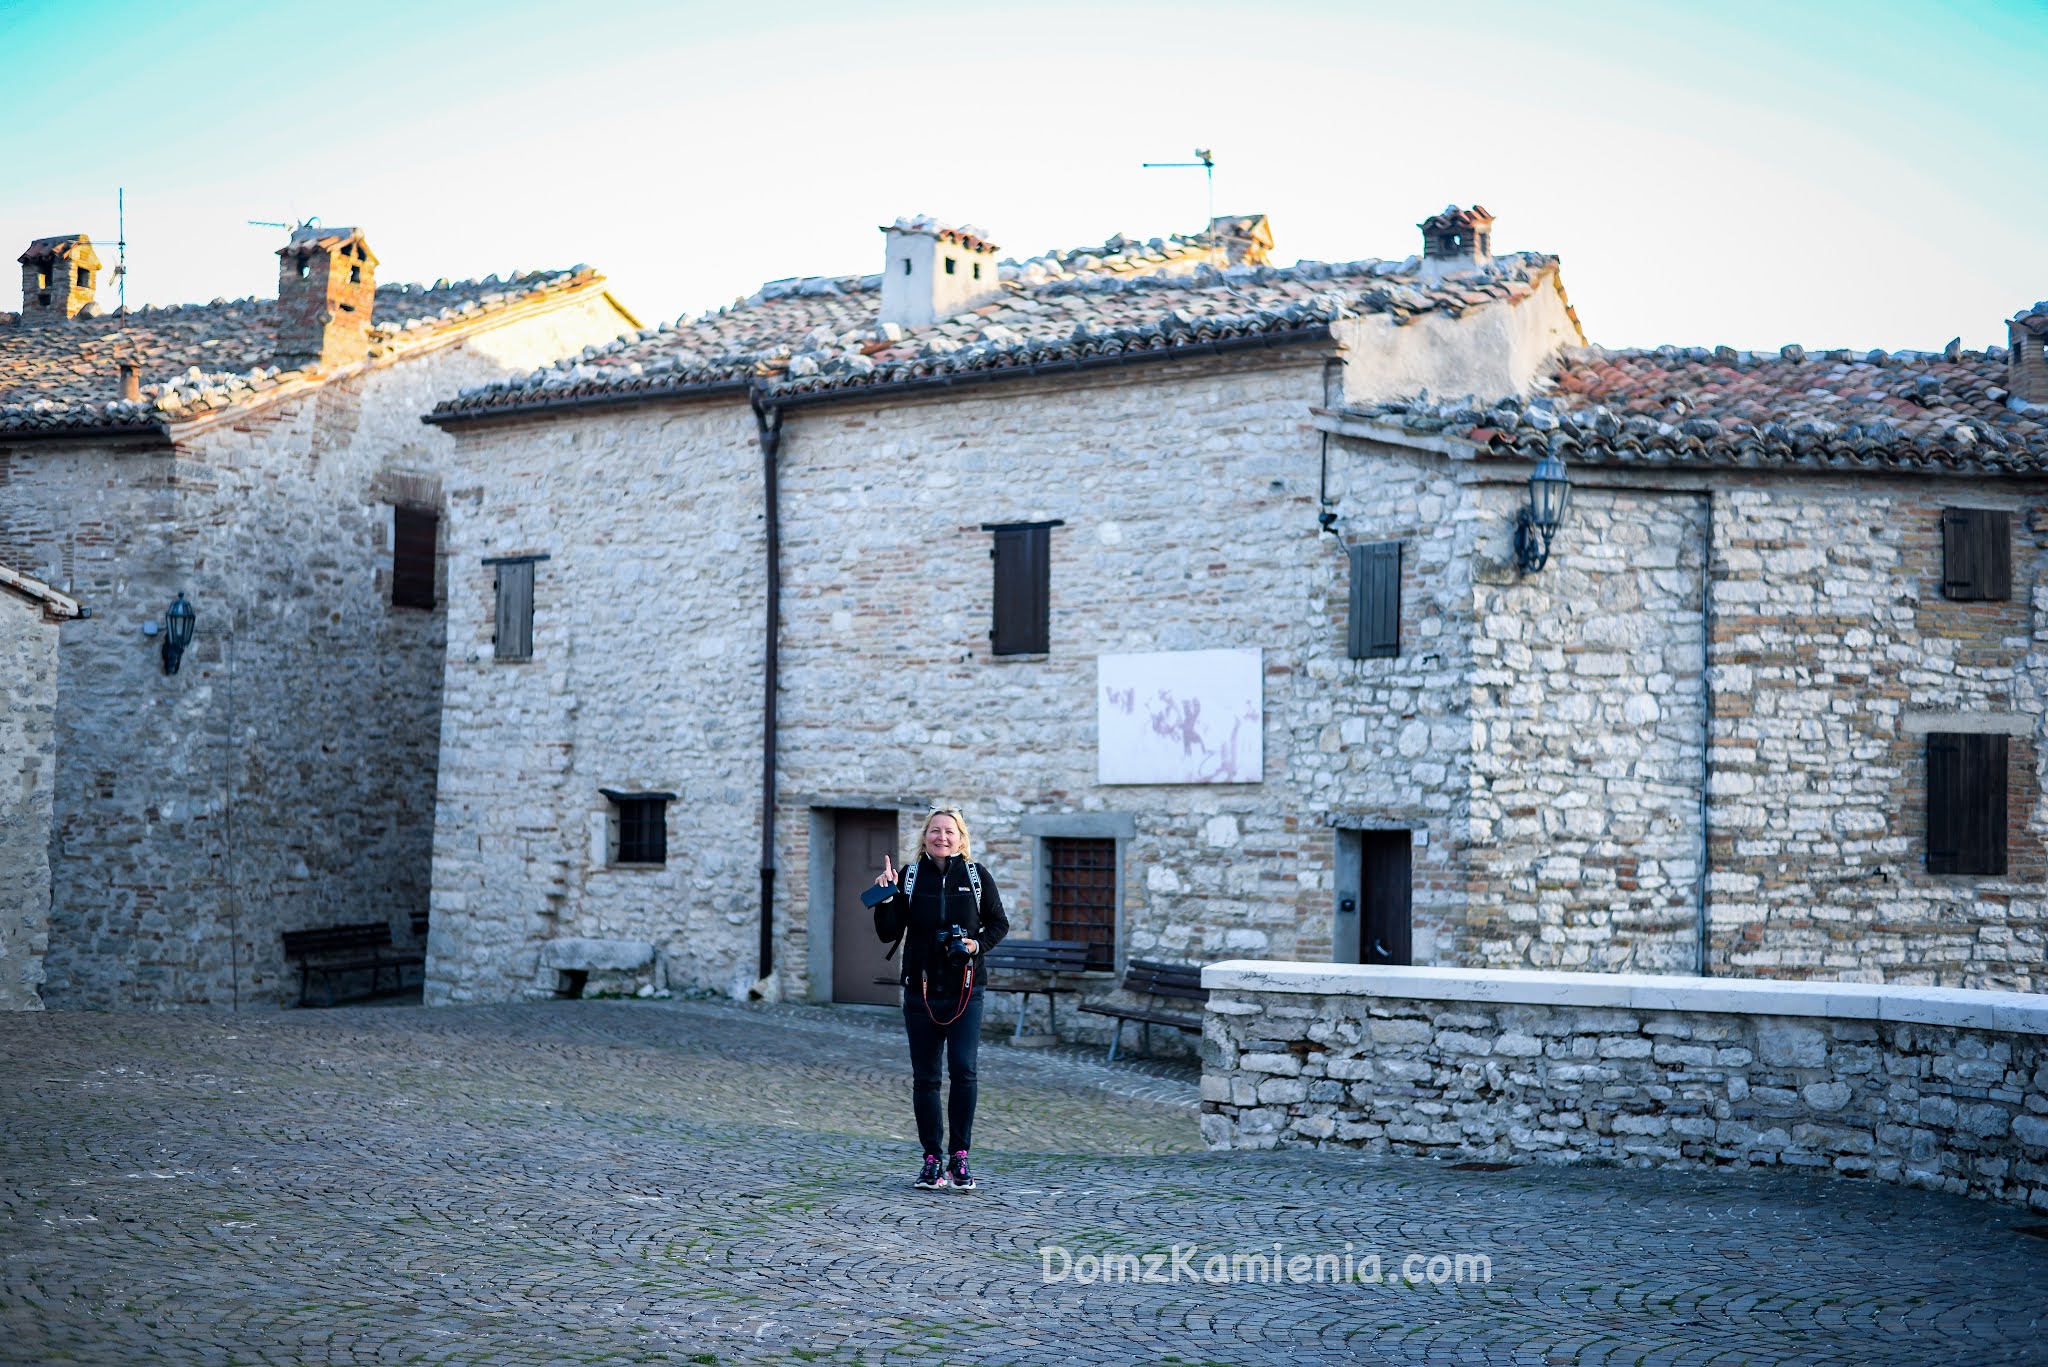 Marche - nieznany region Włoch, Elcito, Dom z Kamienia blog